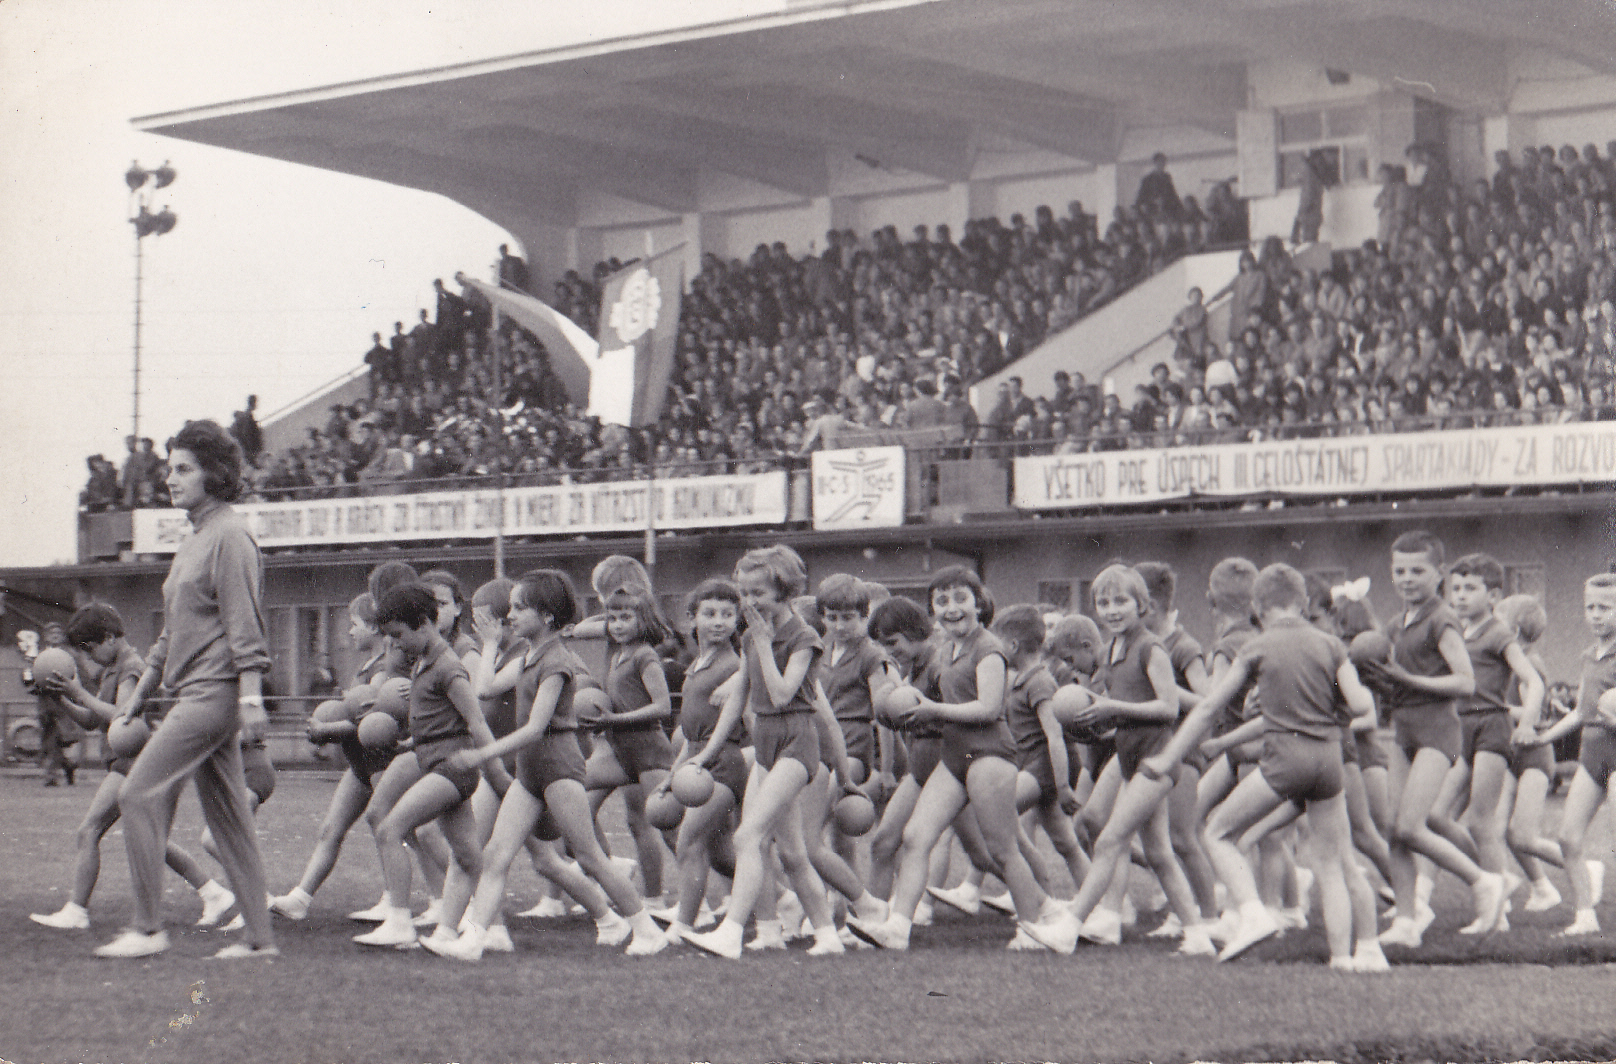 Pani učiteľka Mončeková vedie svojich zverencov na cvičenie (Spartakiáda) na štadióne v Púchove 5. júna 1965